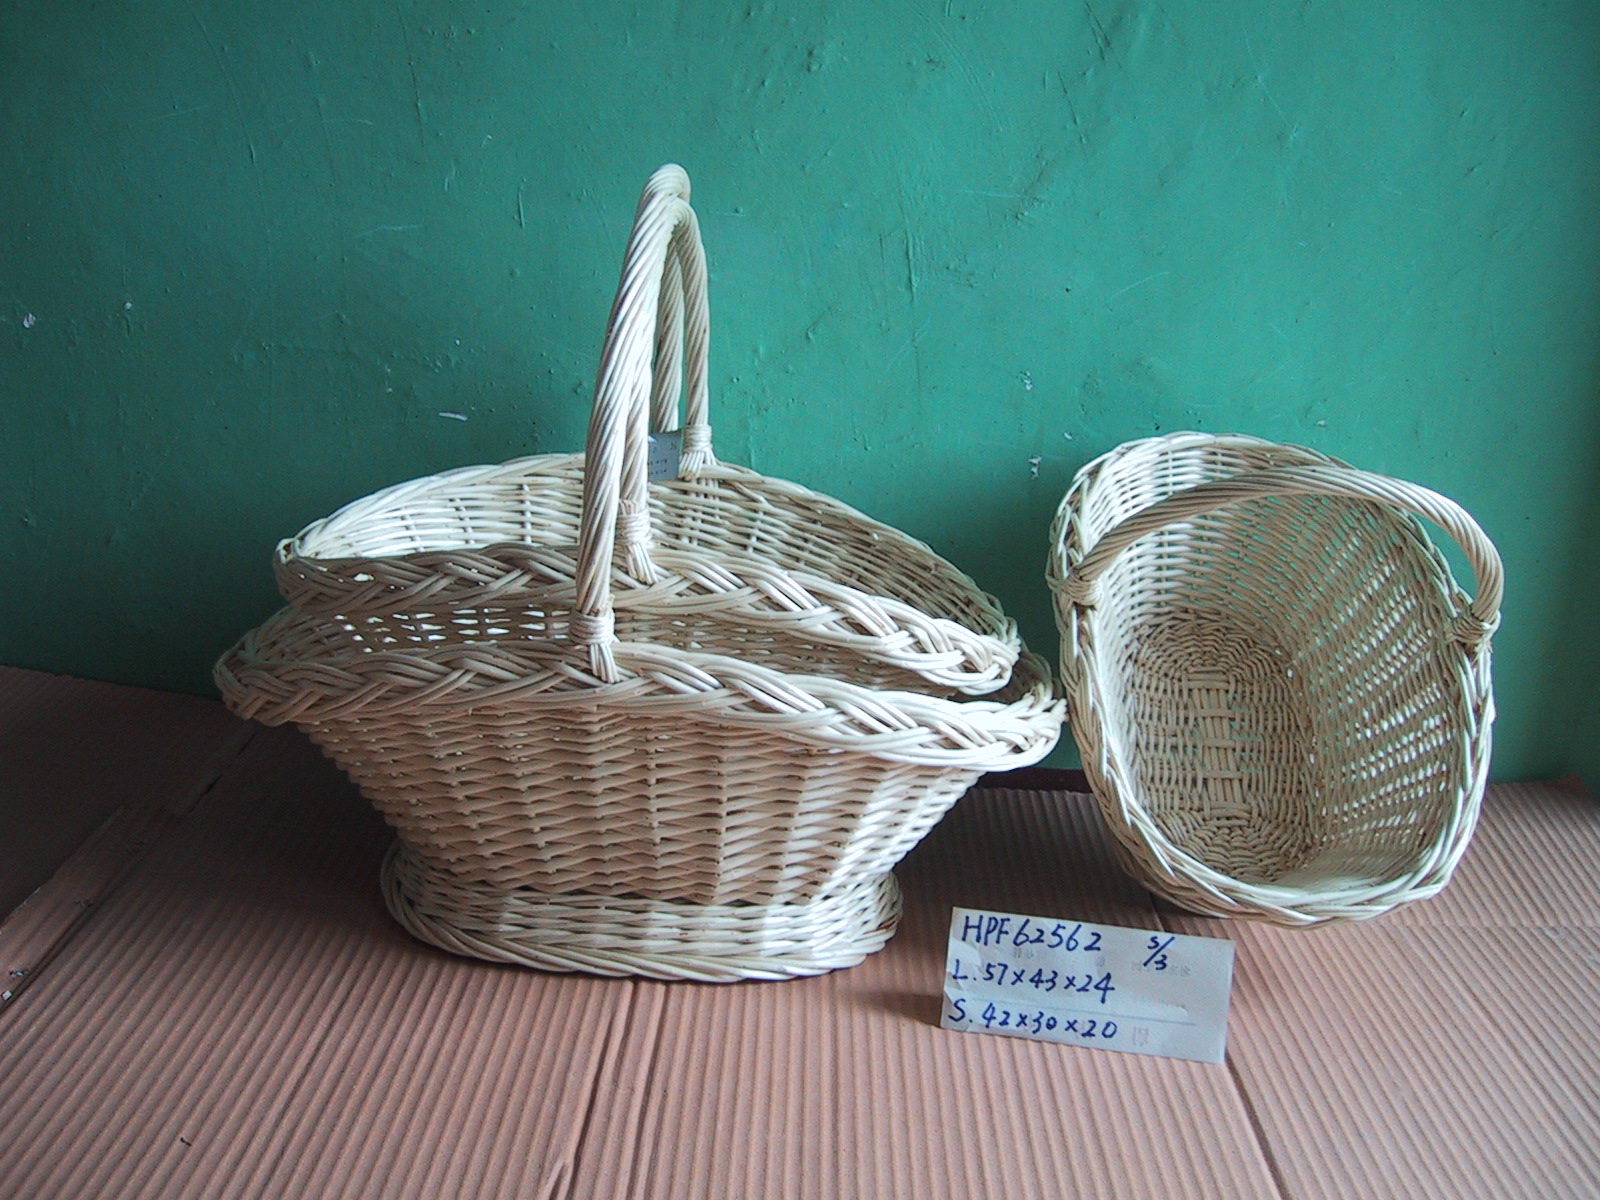 Wicker/Wooden/Fern Weaving Baskets